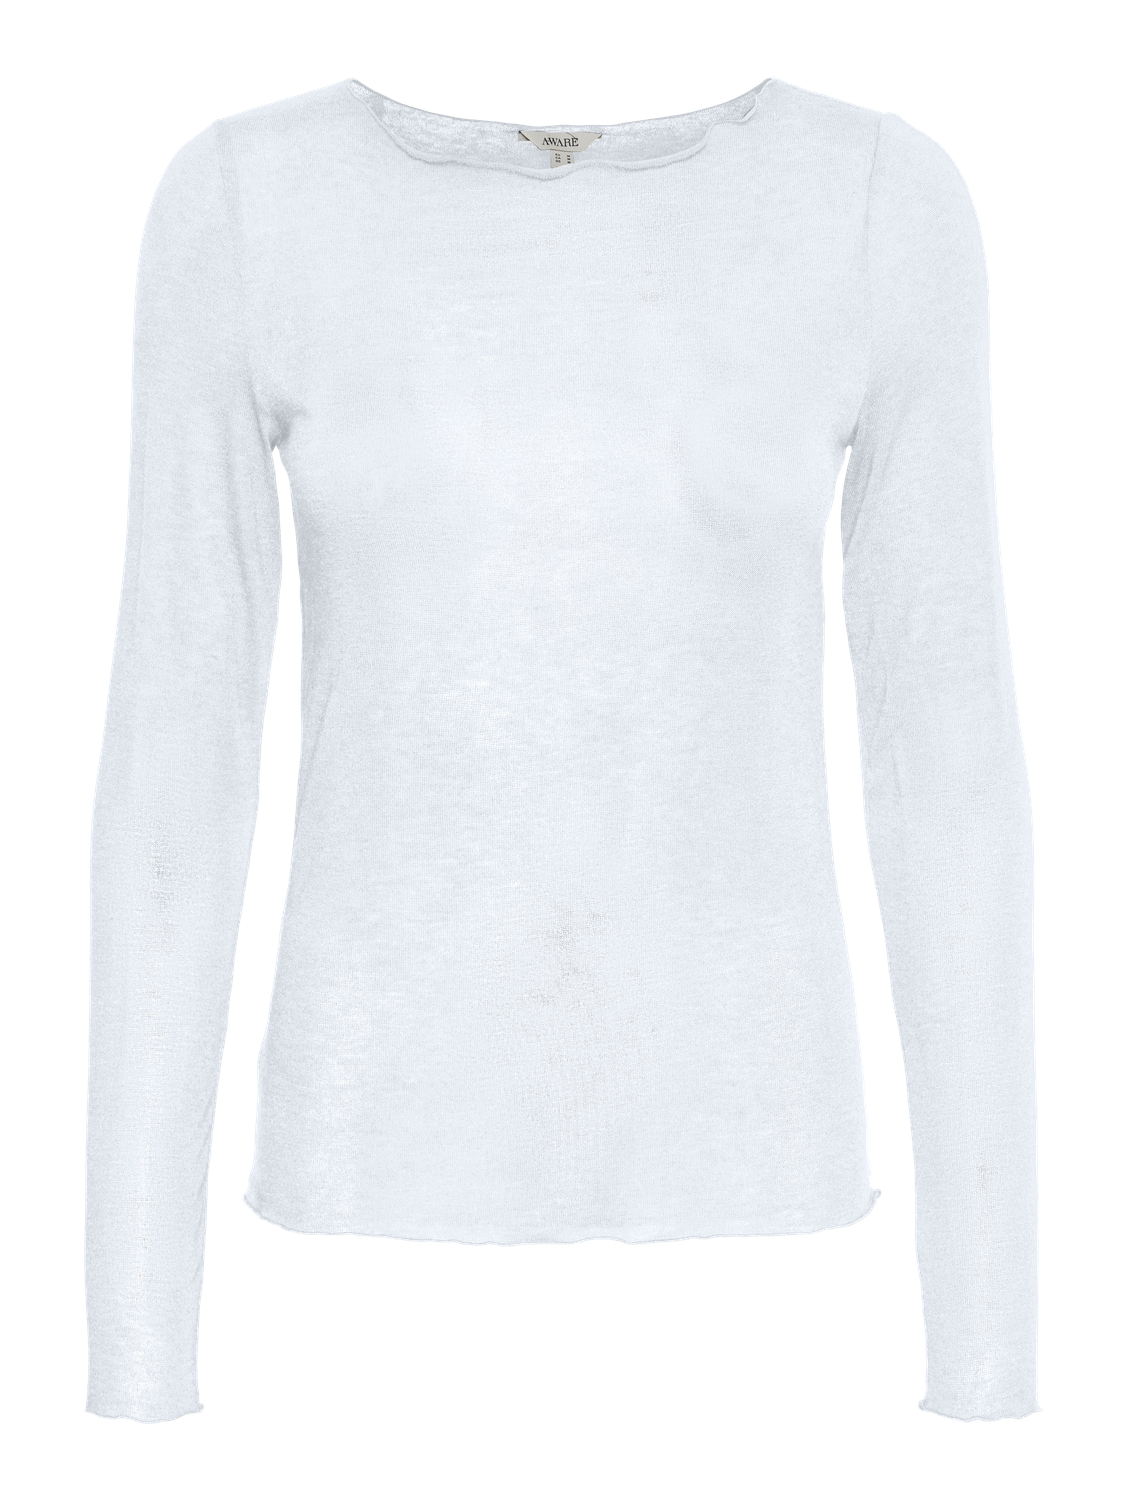 VMGLESHA T-Shirts & Tops - Bright White